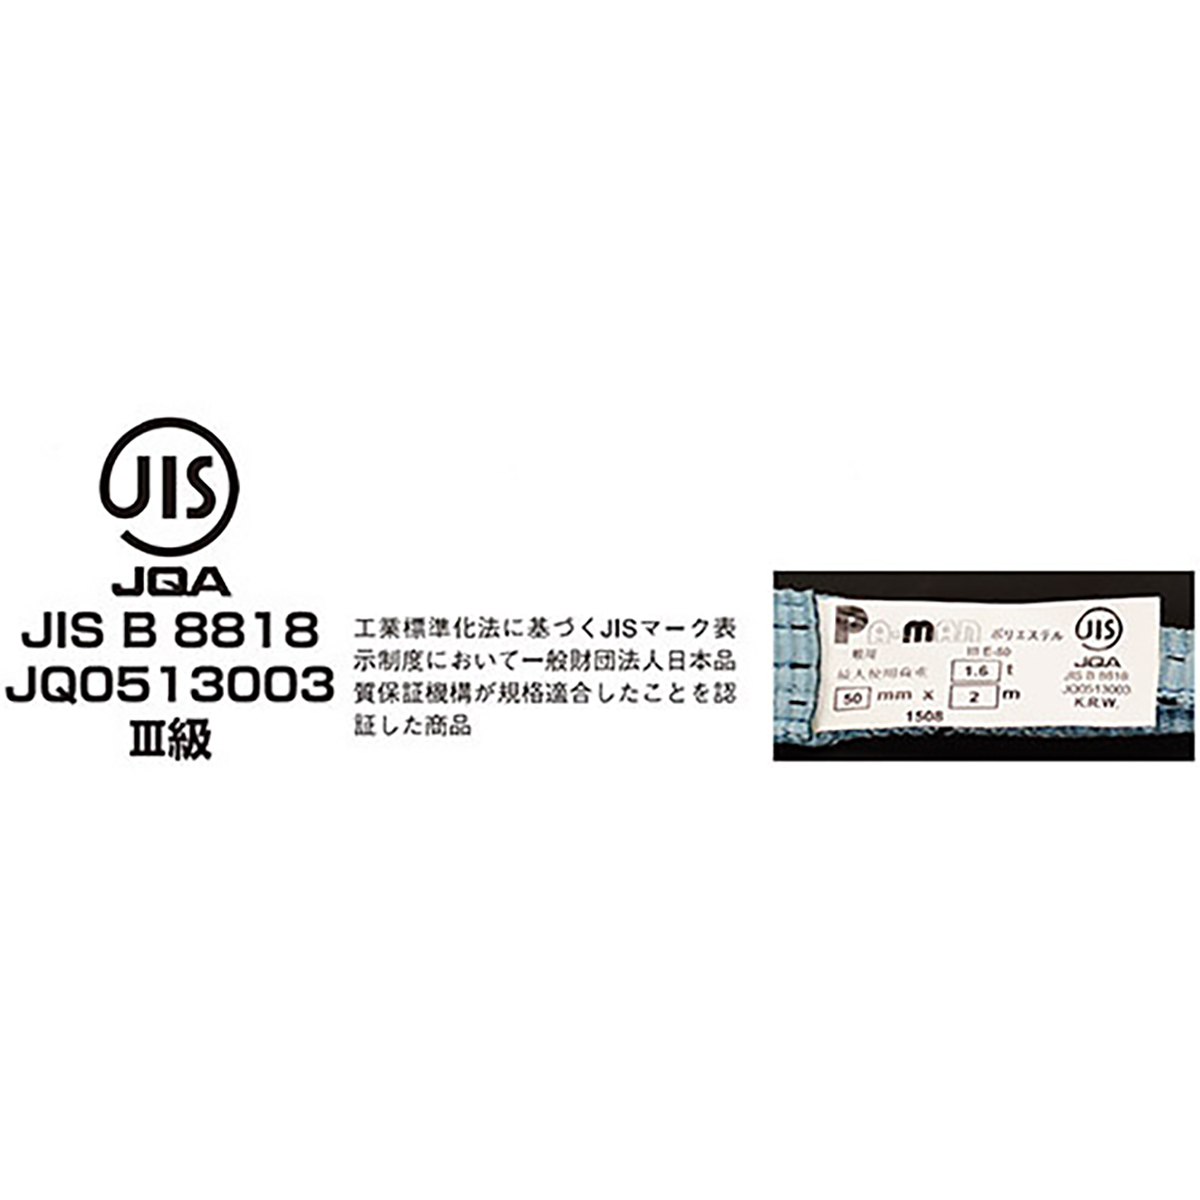 ポリベルトスリング JIS III級 ソフト面付 巾150mm 6m 1本